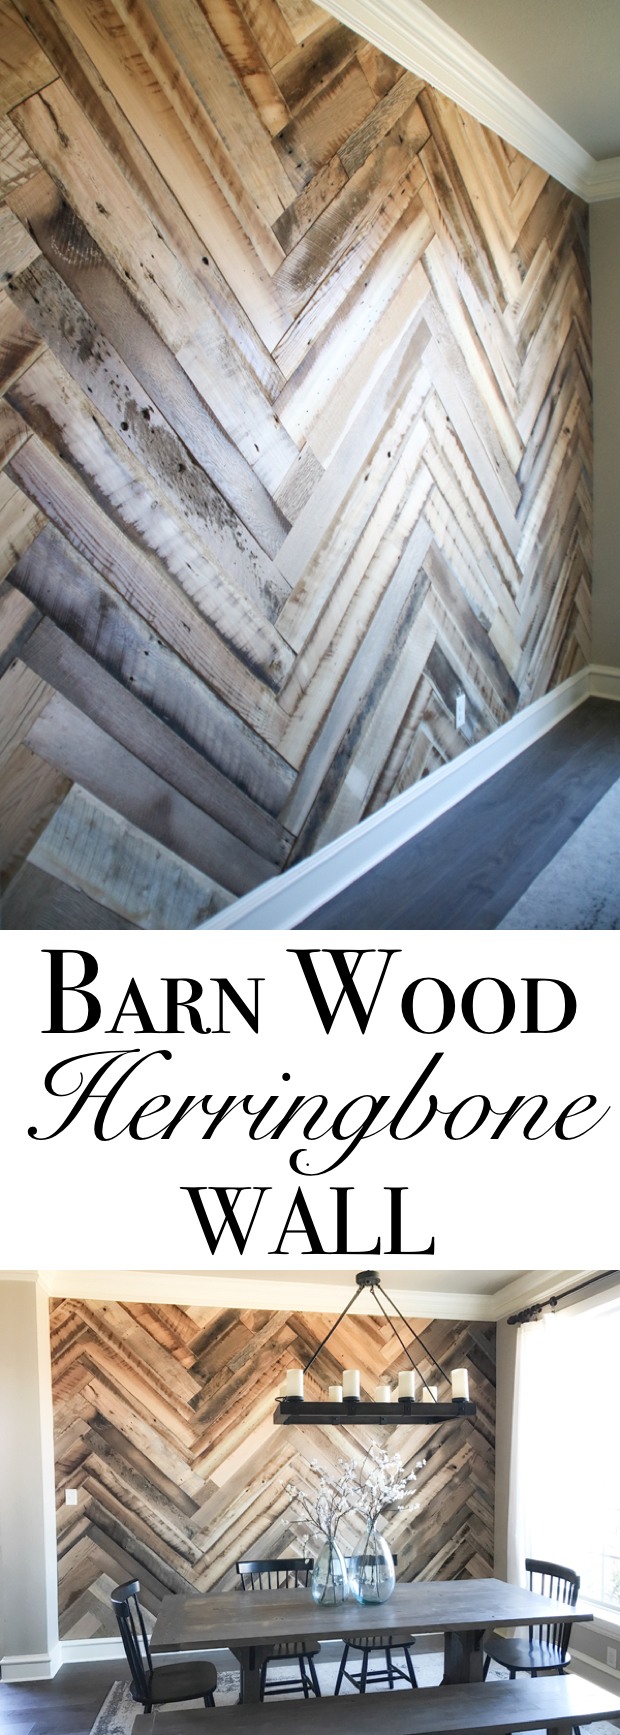 Barn Wood Herringbone Wall